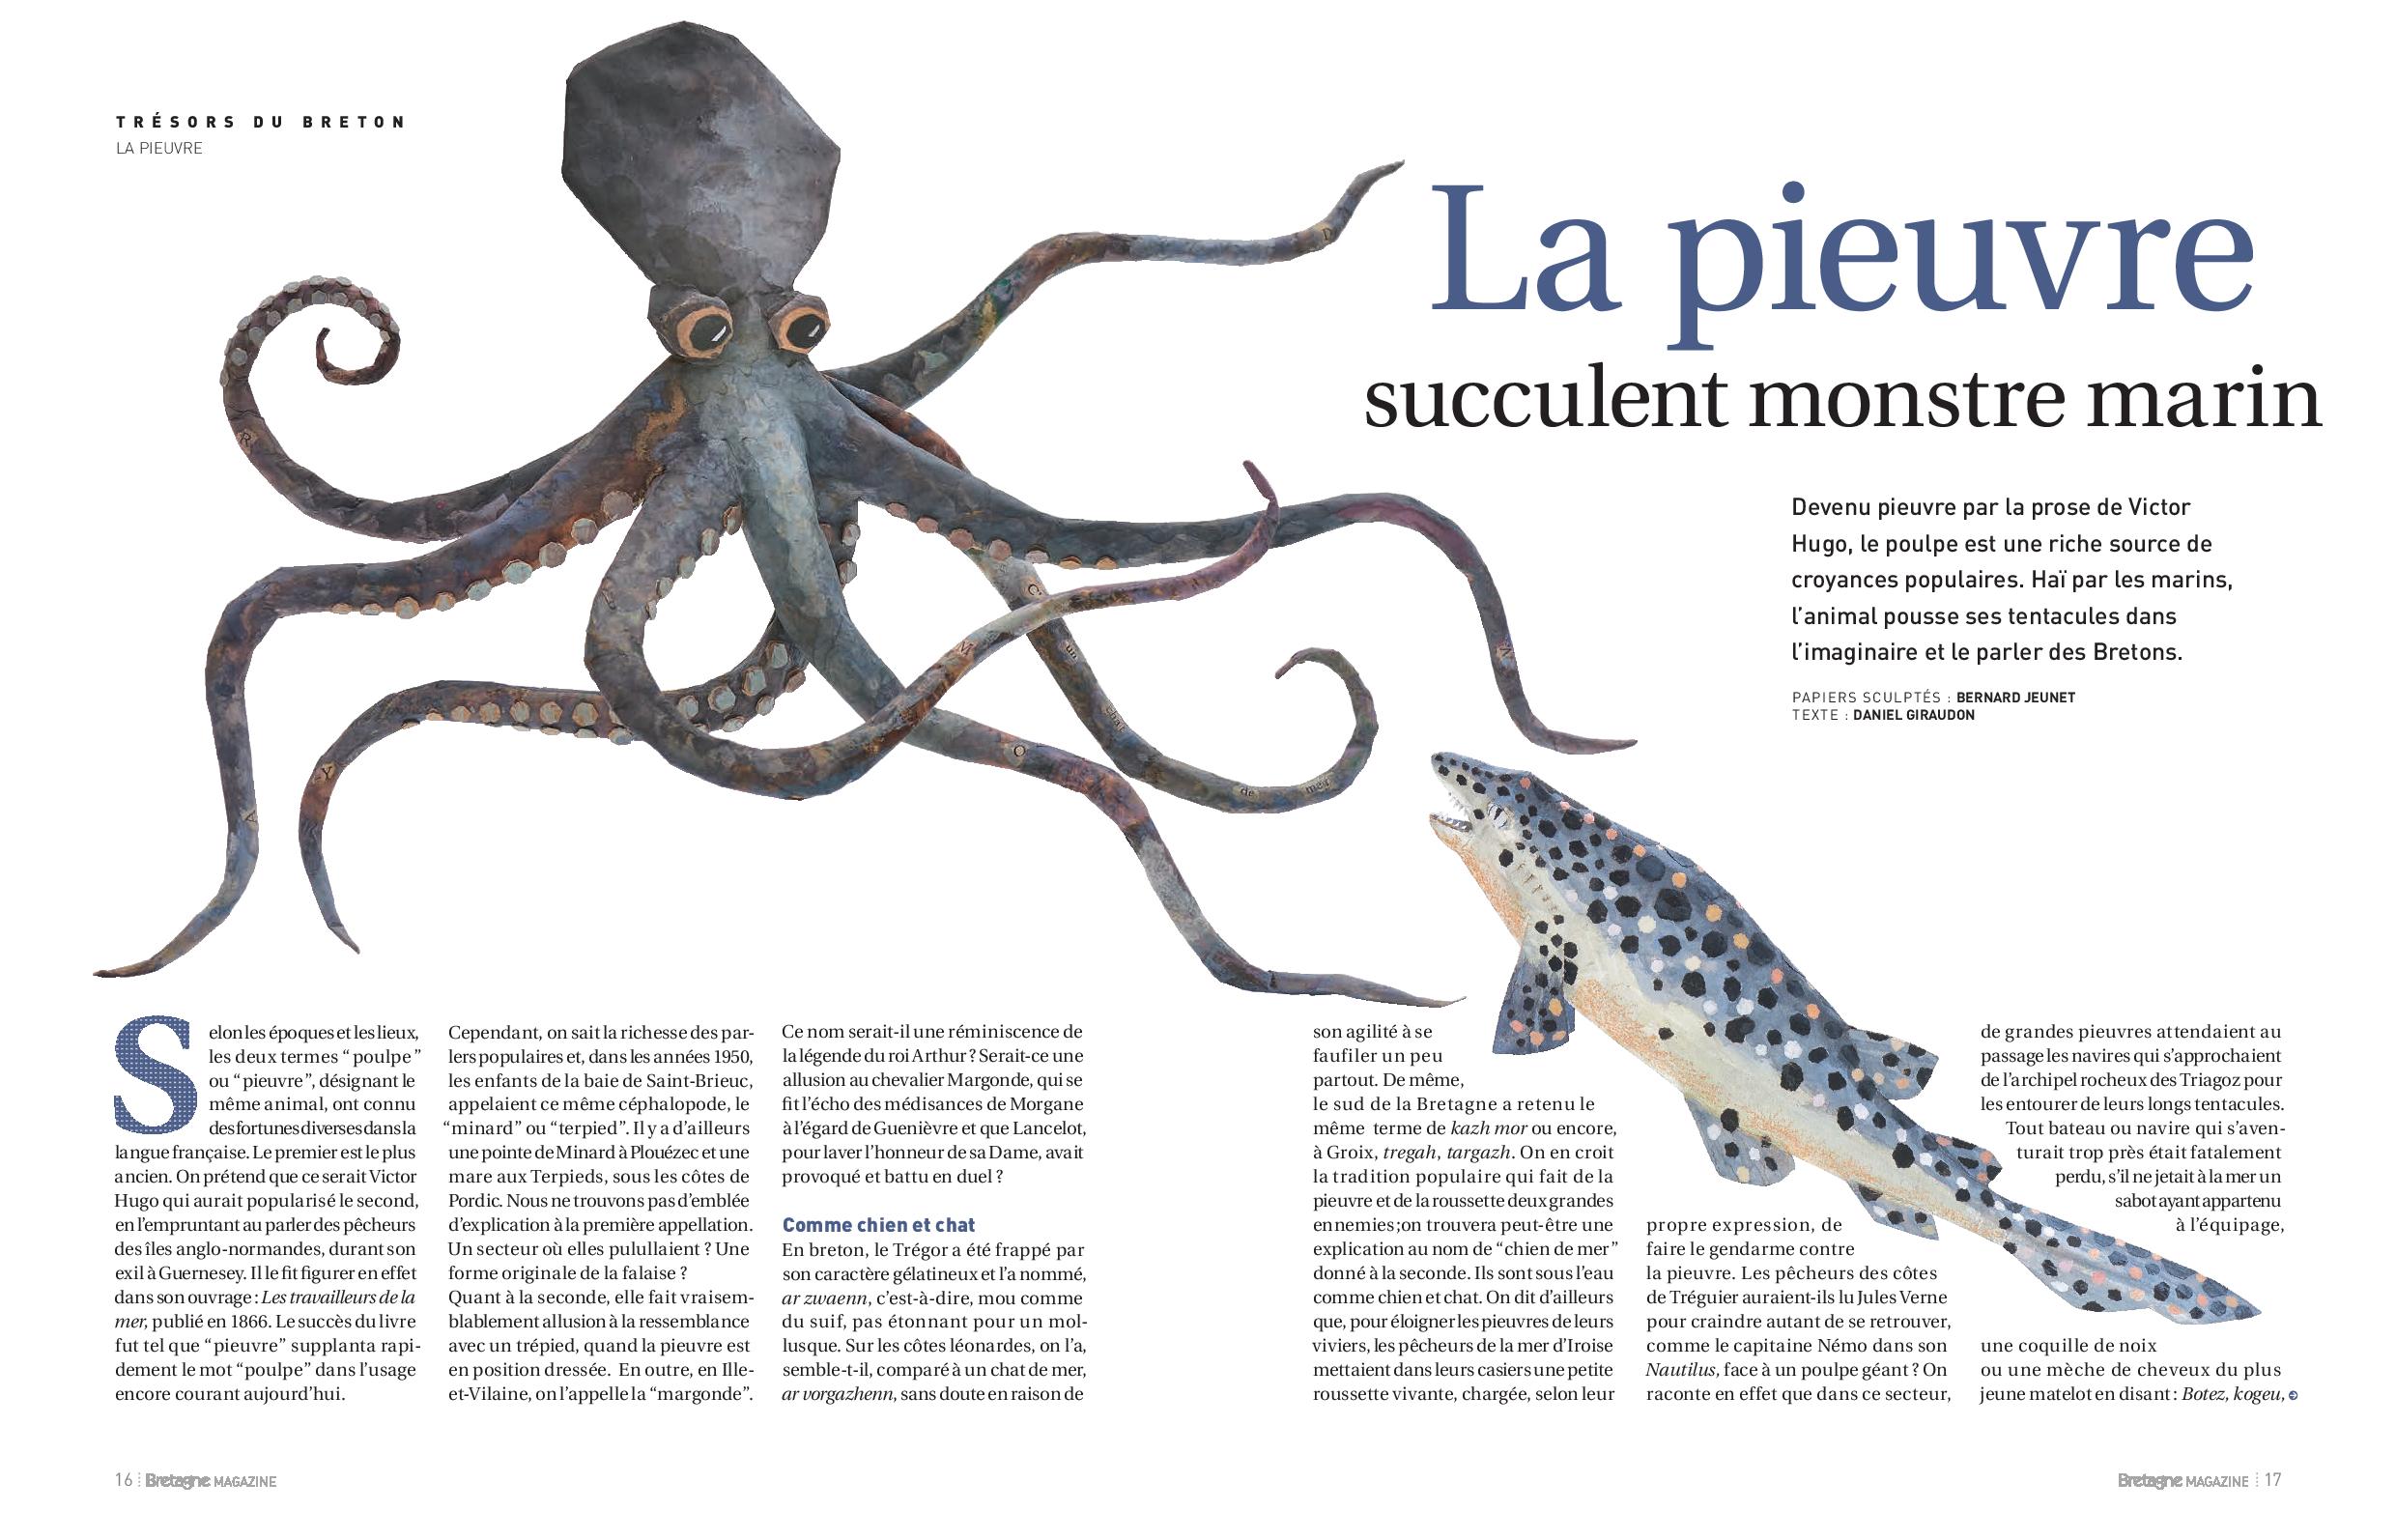 Aperçu de l'article Bretagne Magazine les bretons et la pieuvre